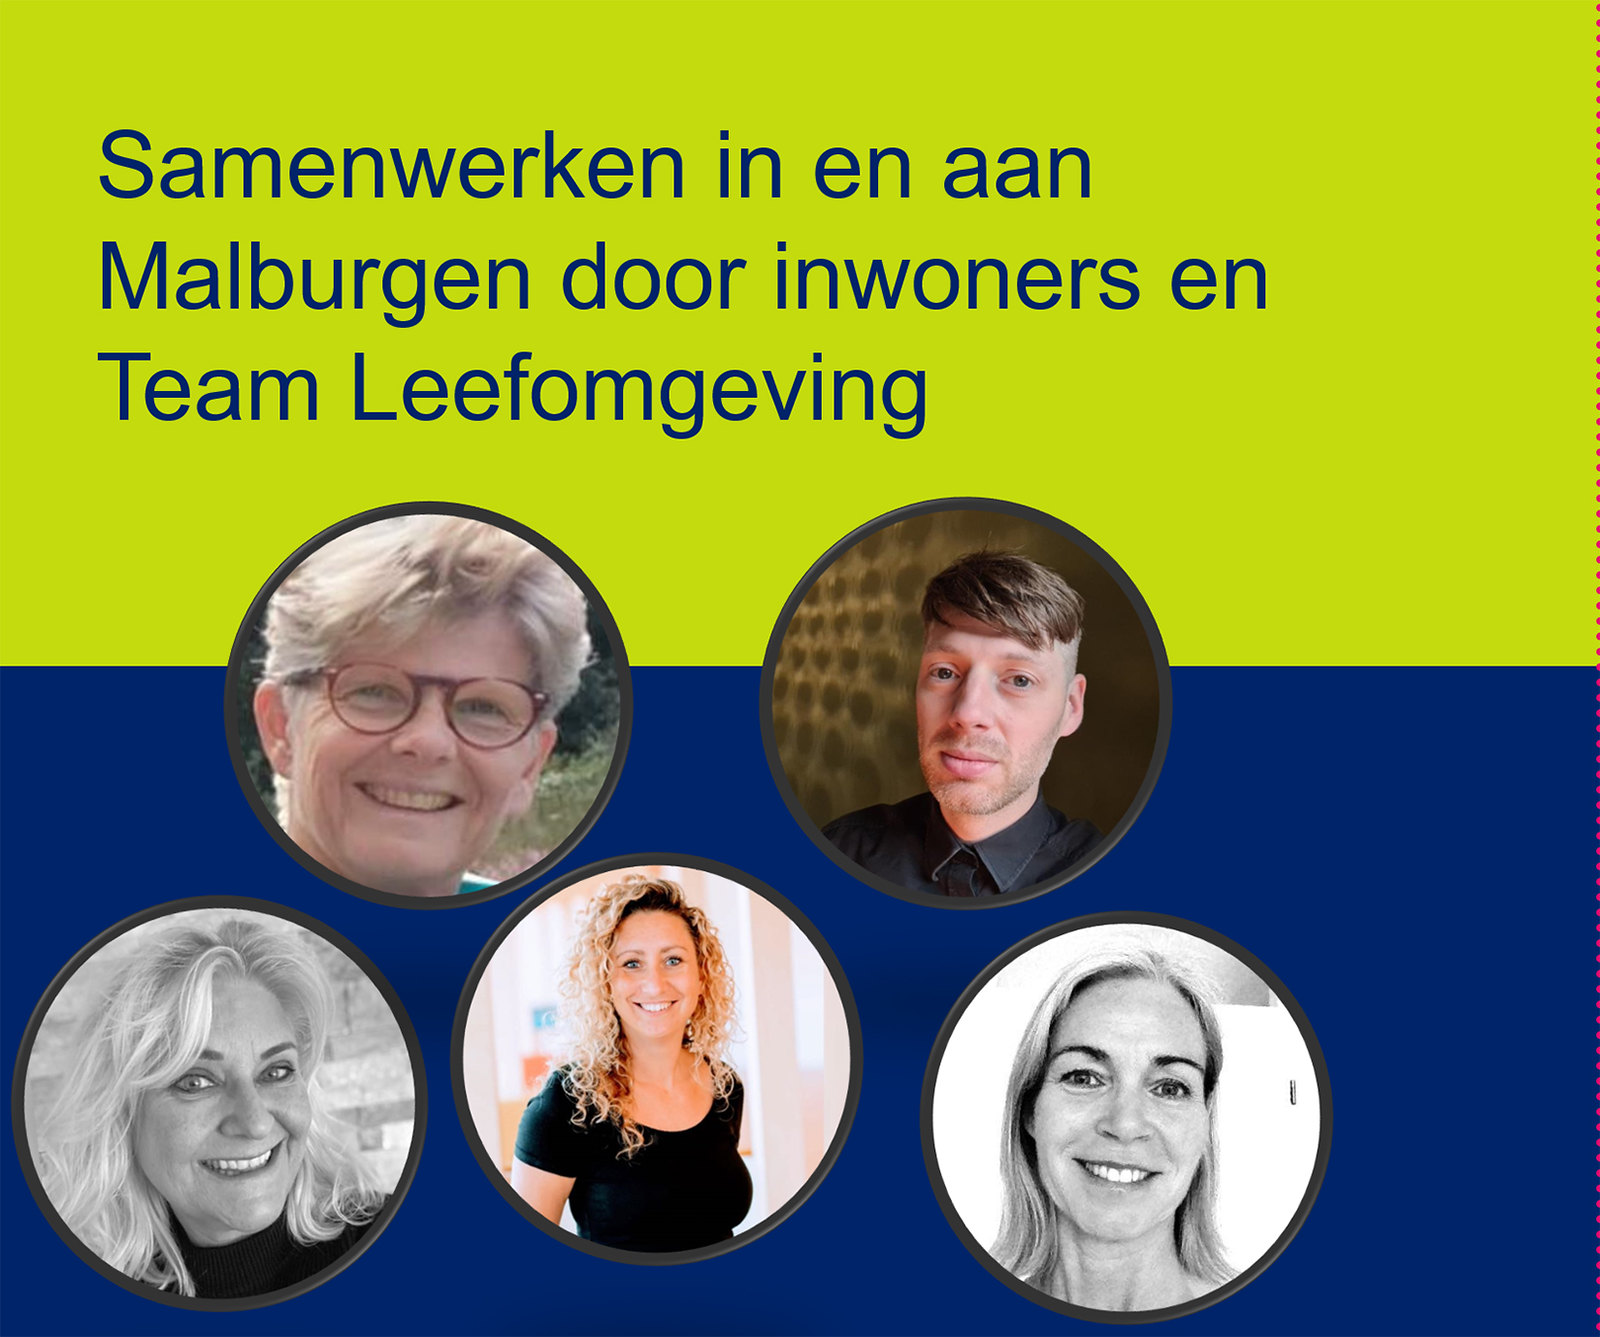 Team Leefomgeving Malburgen